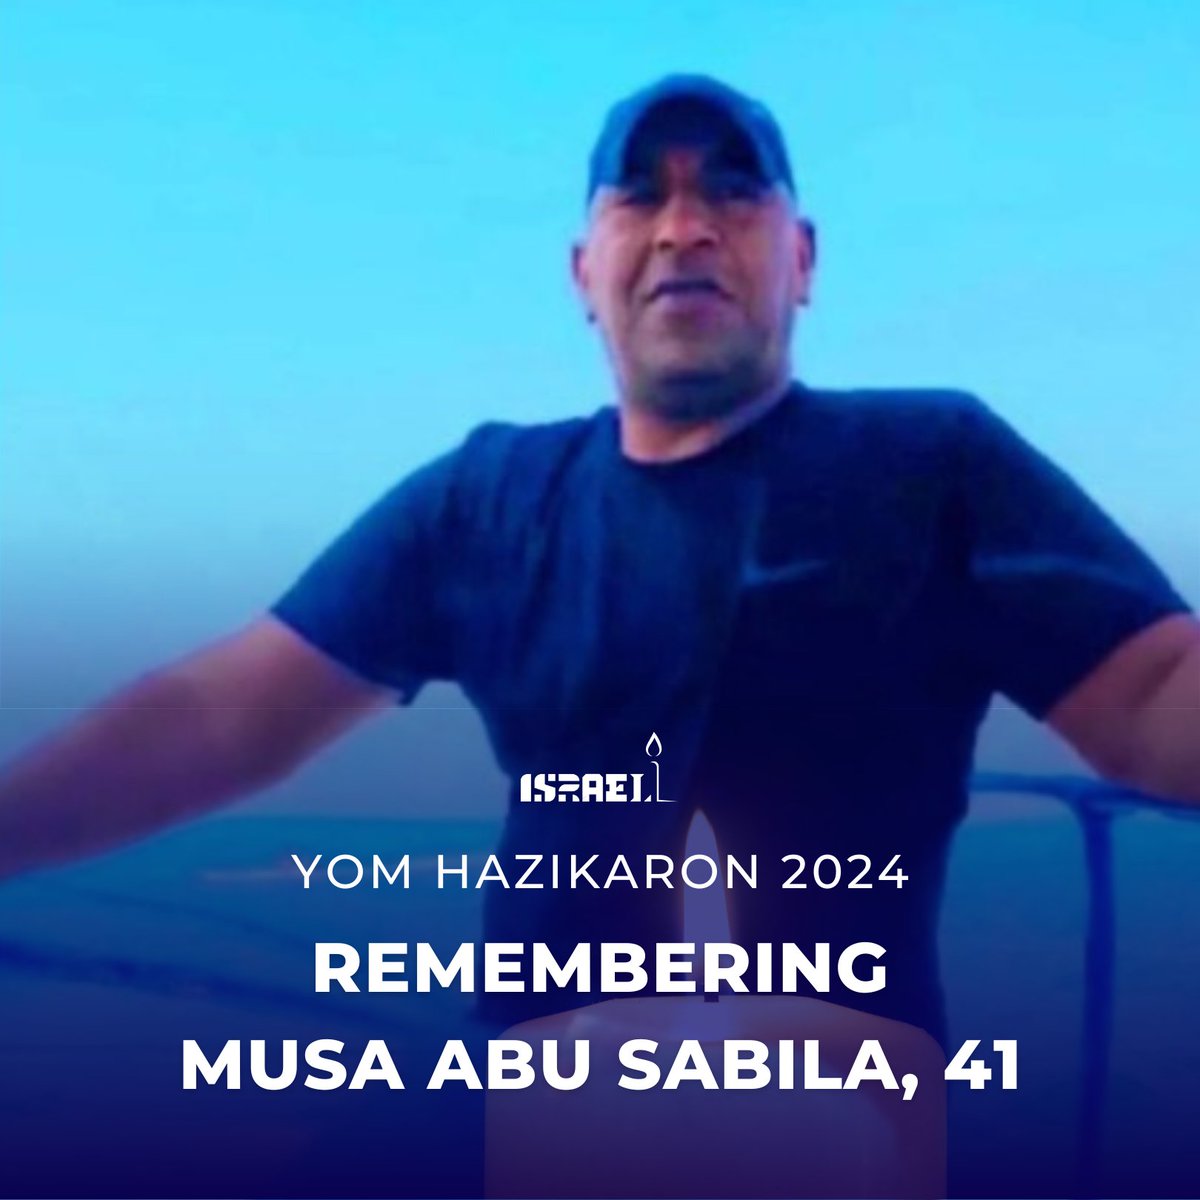 41 वर्षीय मूसा अबू सबिला एक ऑफ-ड्यूटी बेडौइन आईडीएफ सैनिक थे जो 7 अक्टूबर को किबुत्ज़ रीम के पास एक सिक्योरिटी गार्ड के रूप में काम कर रहे थे। जब वह किबुत्ज़ रीम में अपने भतीजे को बचाने के लिए जा रहे थे तभी हमास आतंकवादियों ने उनकी हत्या कर दी। मूसा अबू सबिला की स्मृति एक…